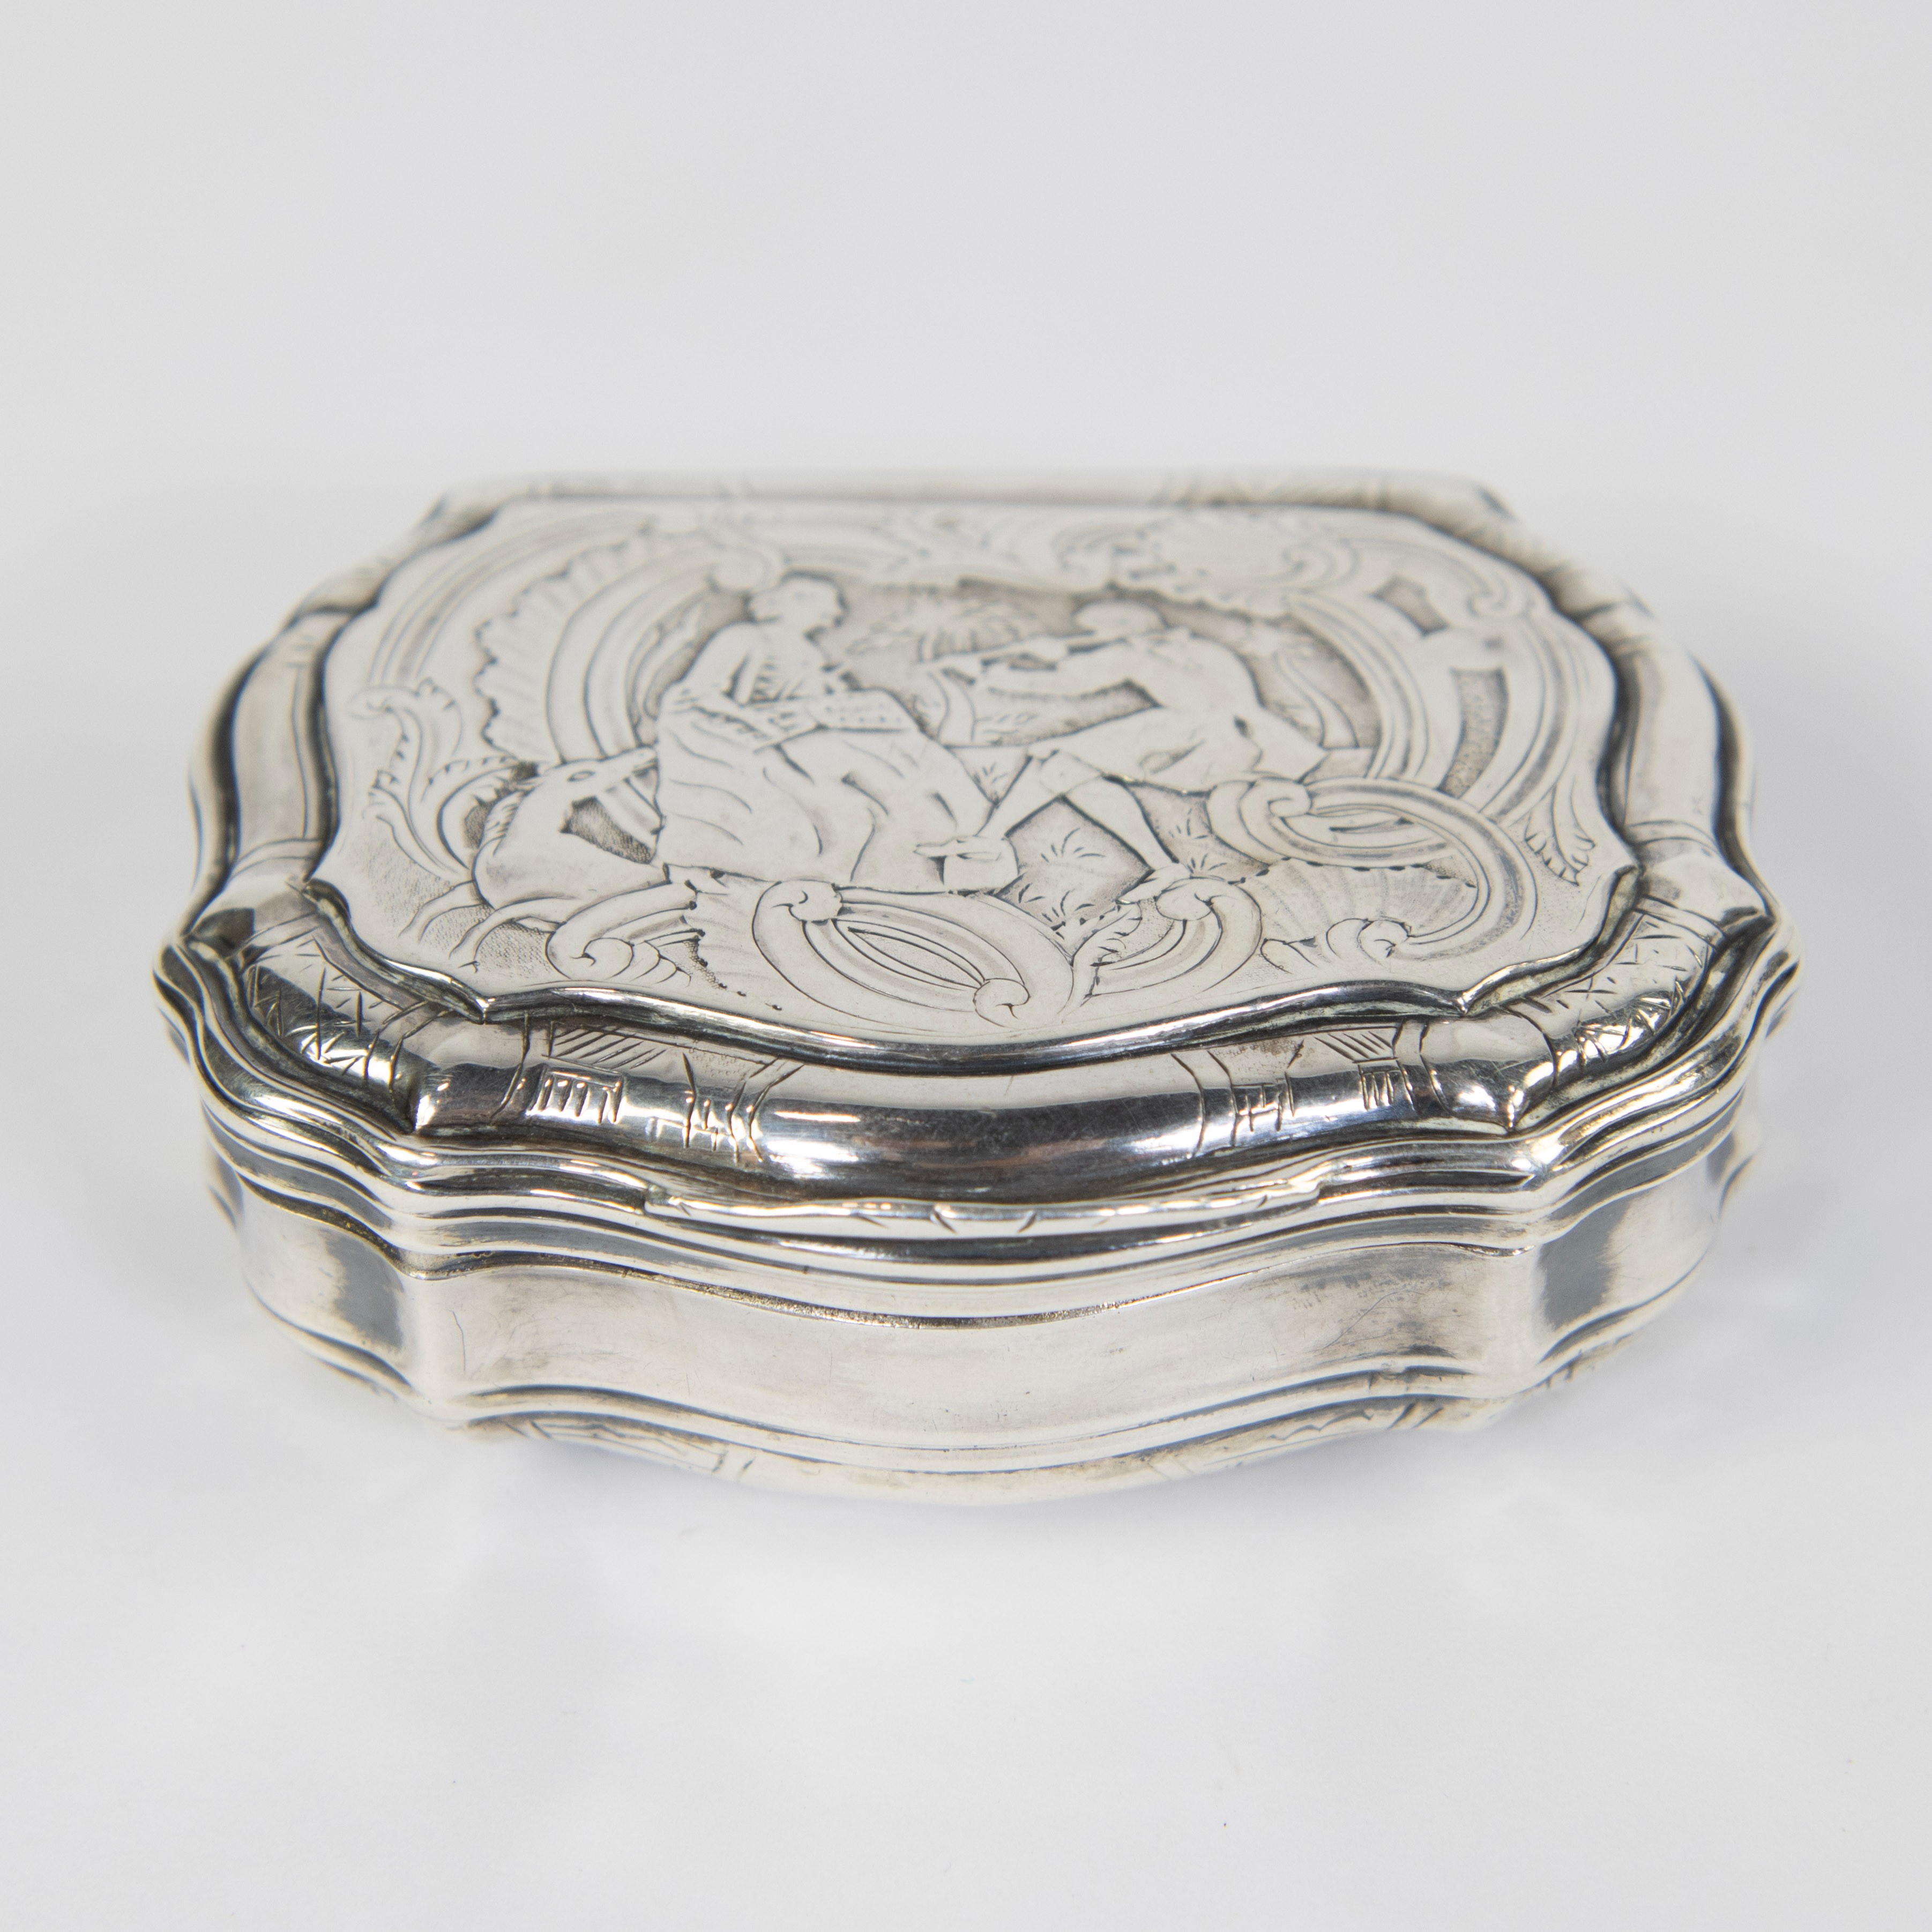 A silver tobacco box 1753 Ath Louis XV d'époque, 5 hallmarks